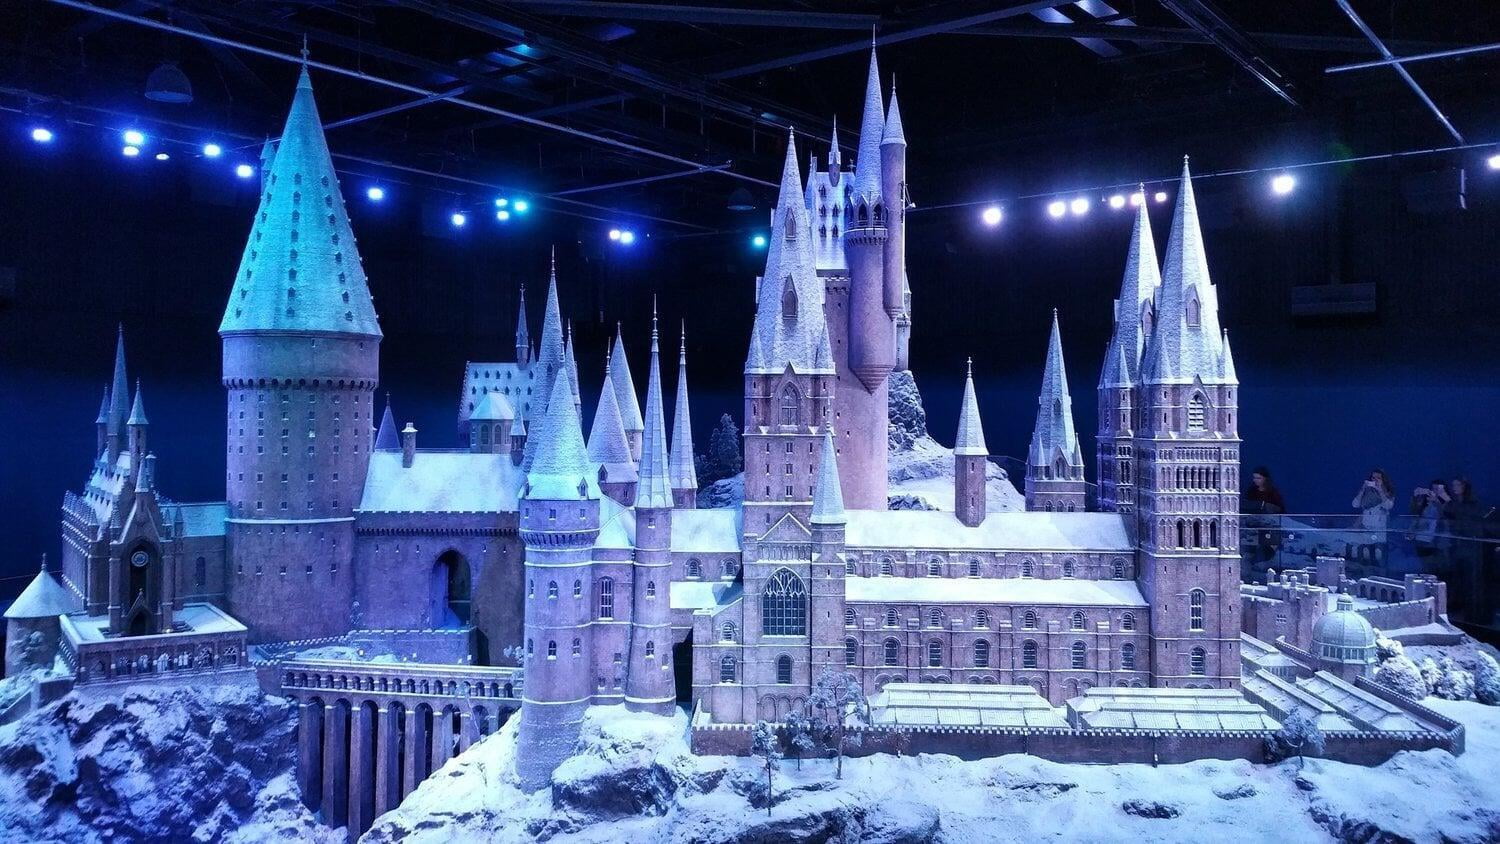 Hogwarts - Warner Bro's Studio, Host Family Stay